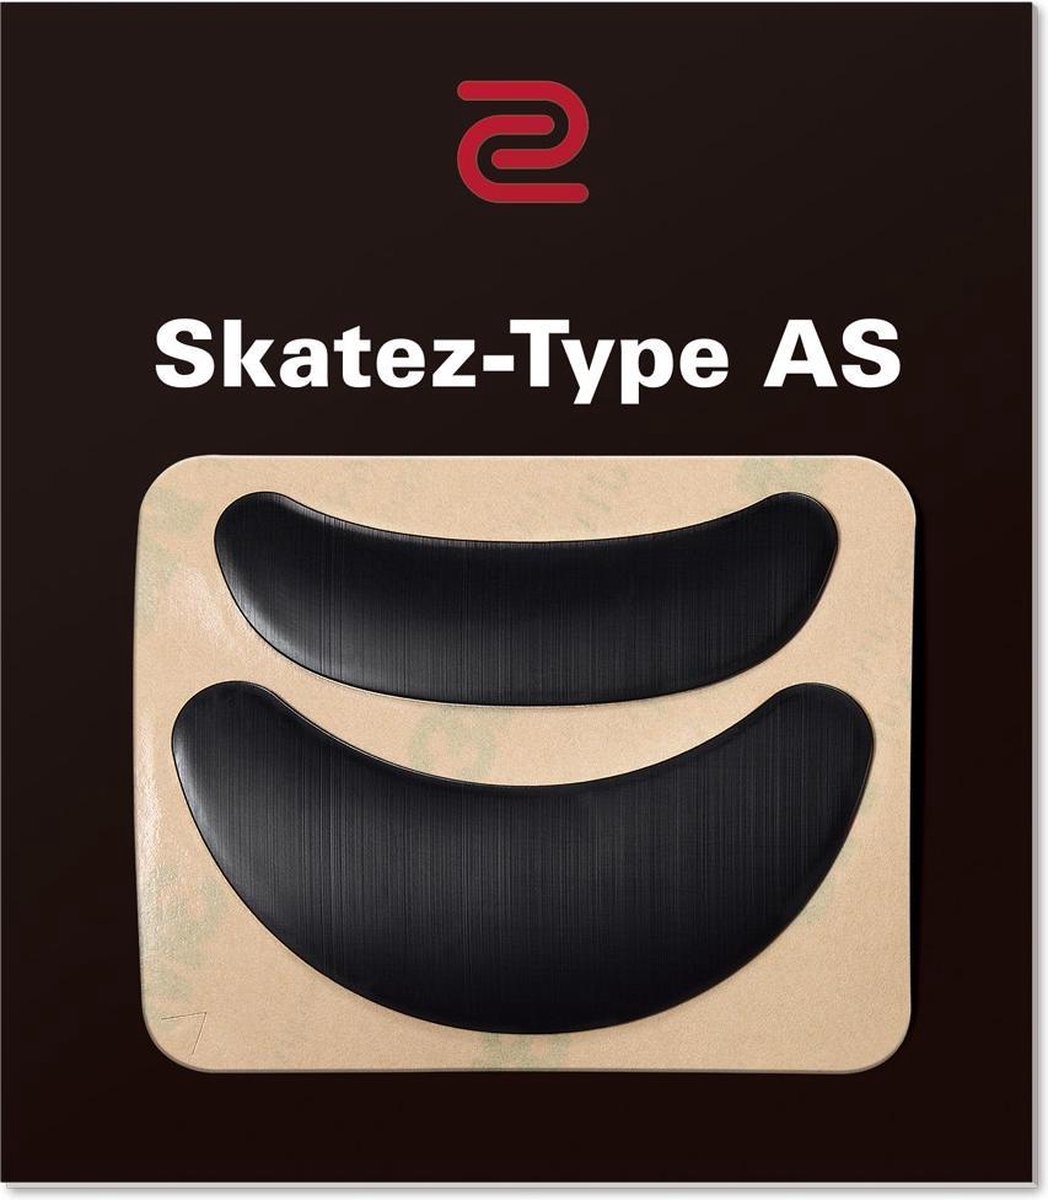 Zowie - Skatez-Type AS